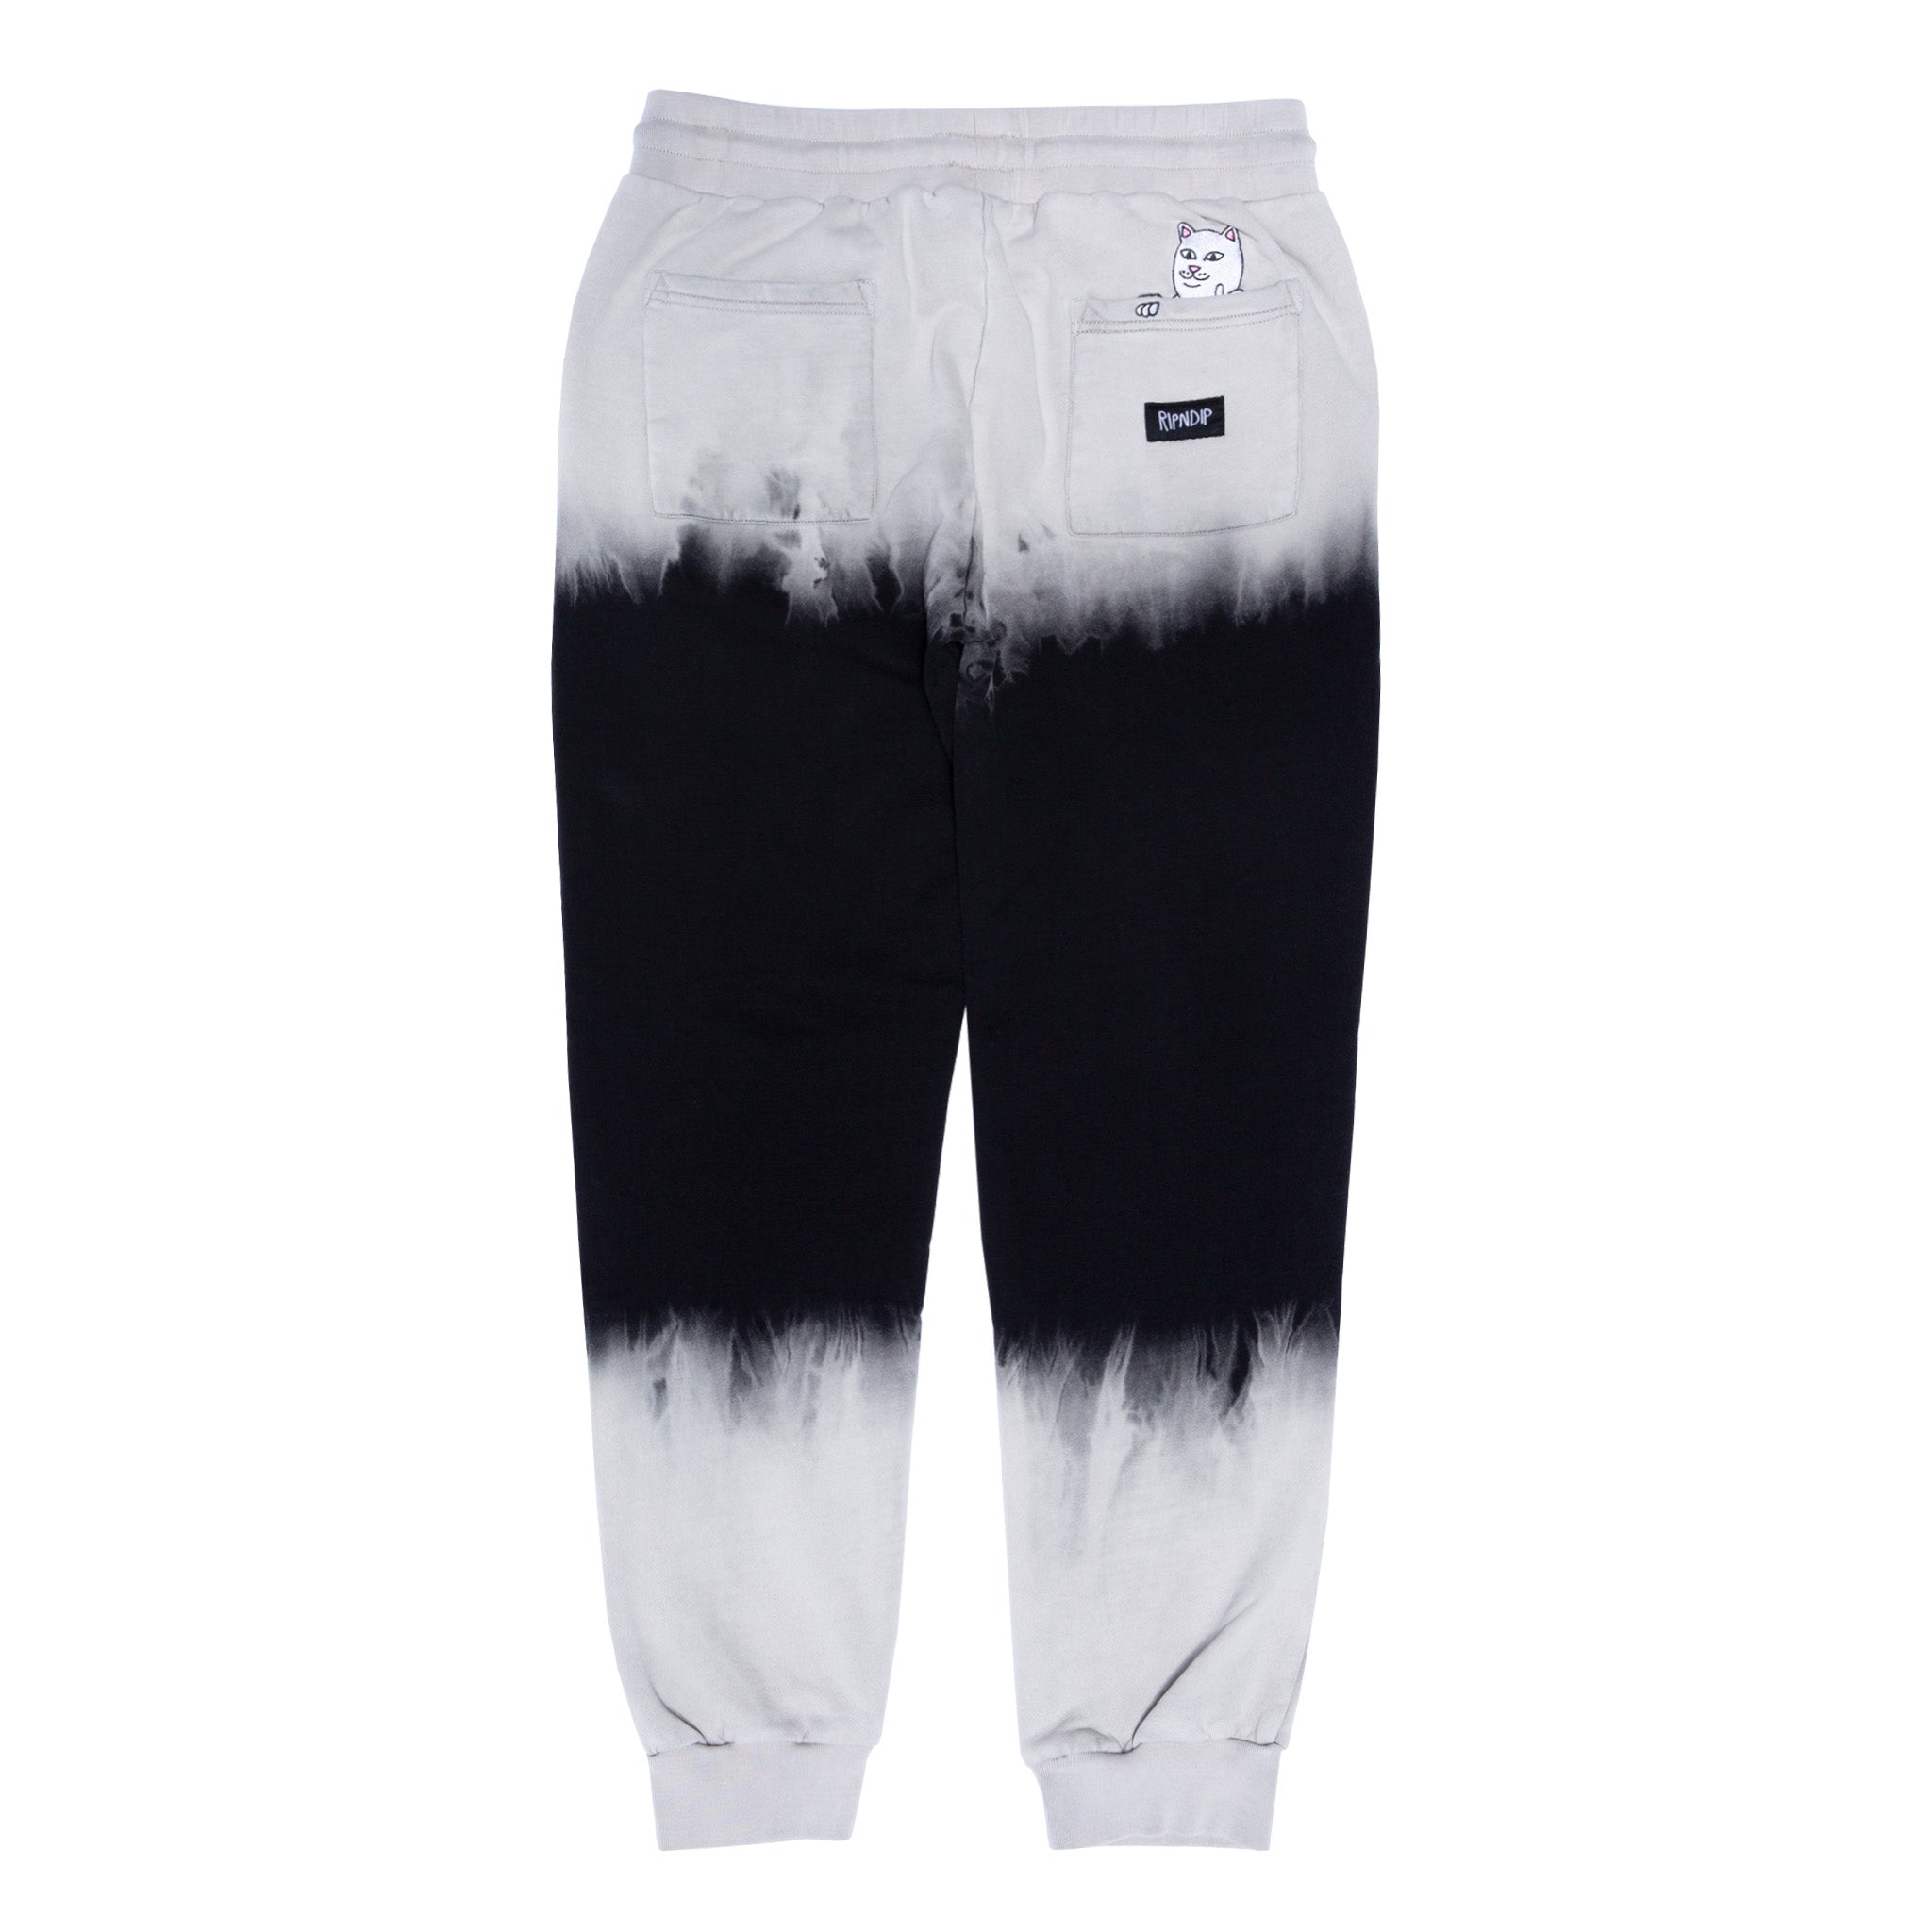 351538 Ripntail Sweatpants (Tan/Black Stripe Dye)